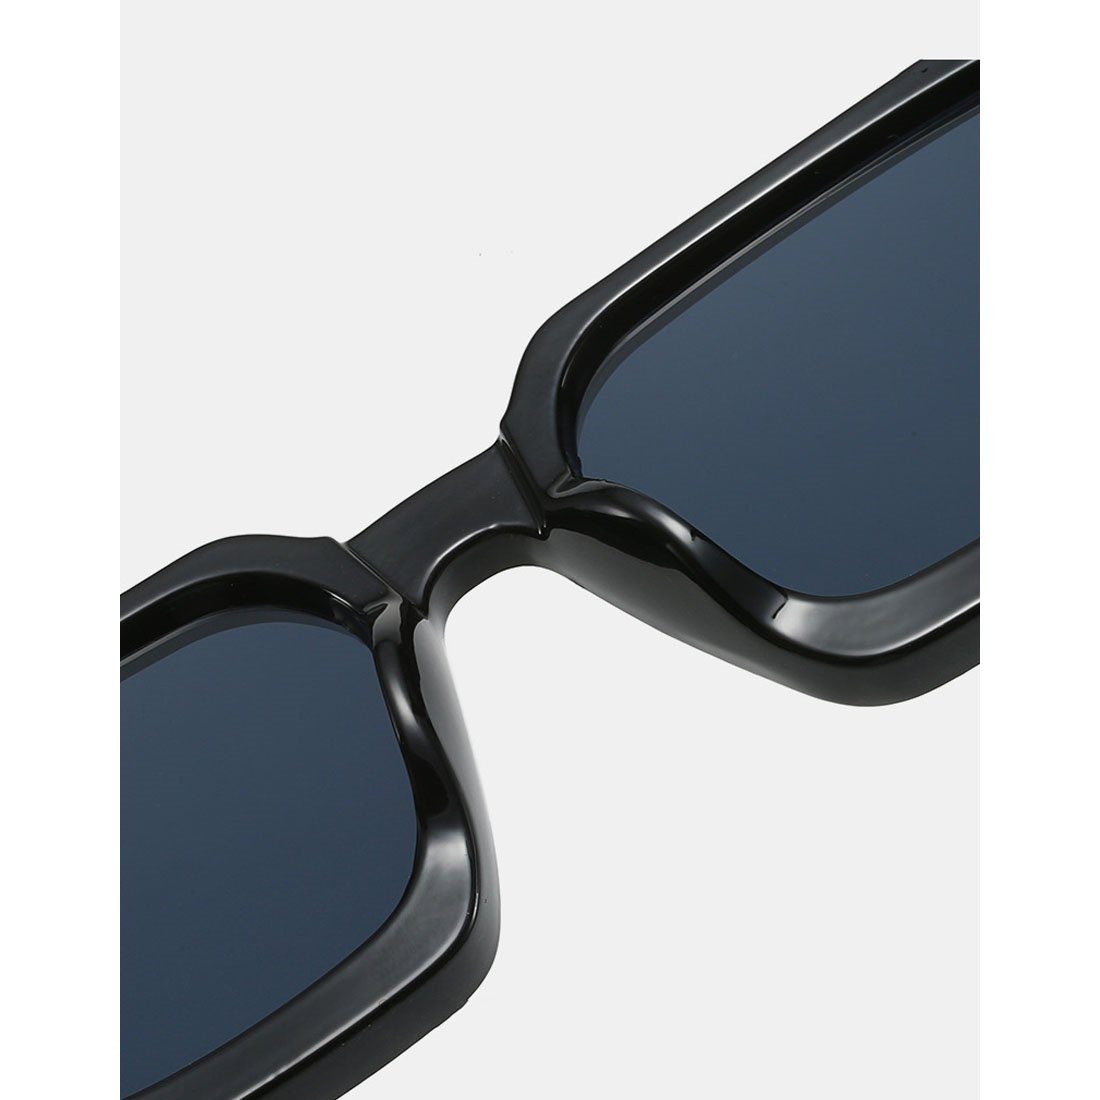 für Frauen,Sommer-Sonnenbrille Sport-Sonnenbrille für draußen Trendige Sonnenbrille DÖRÖY